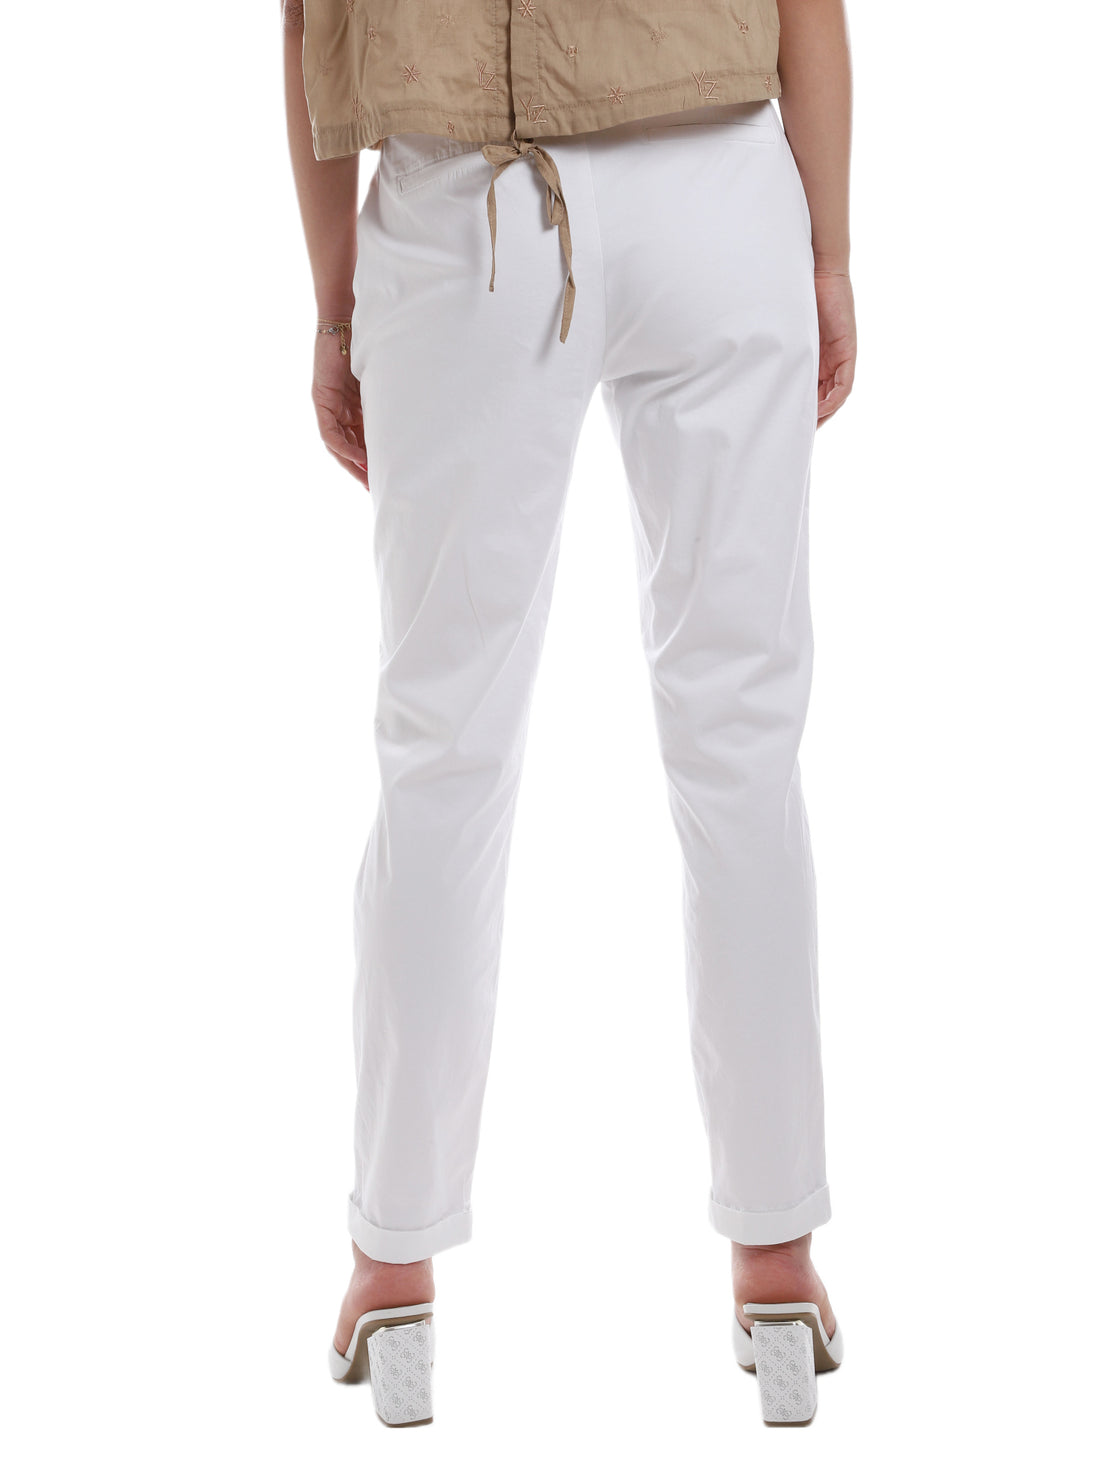 Pantaloni Bianco Fracomina